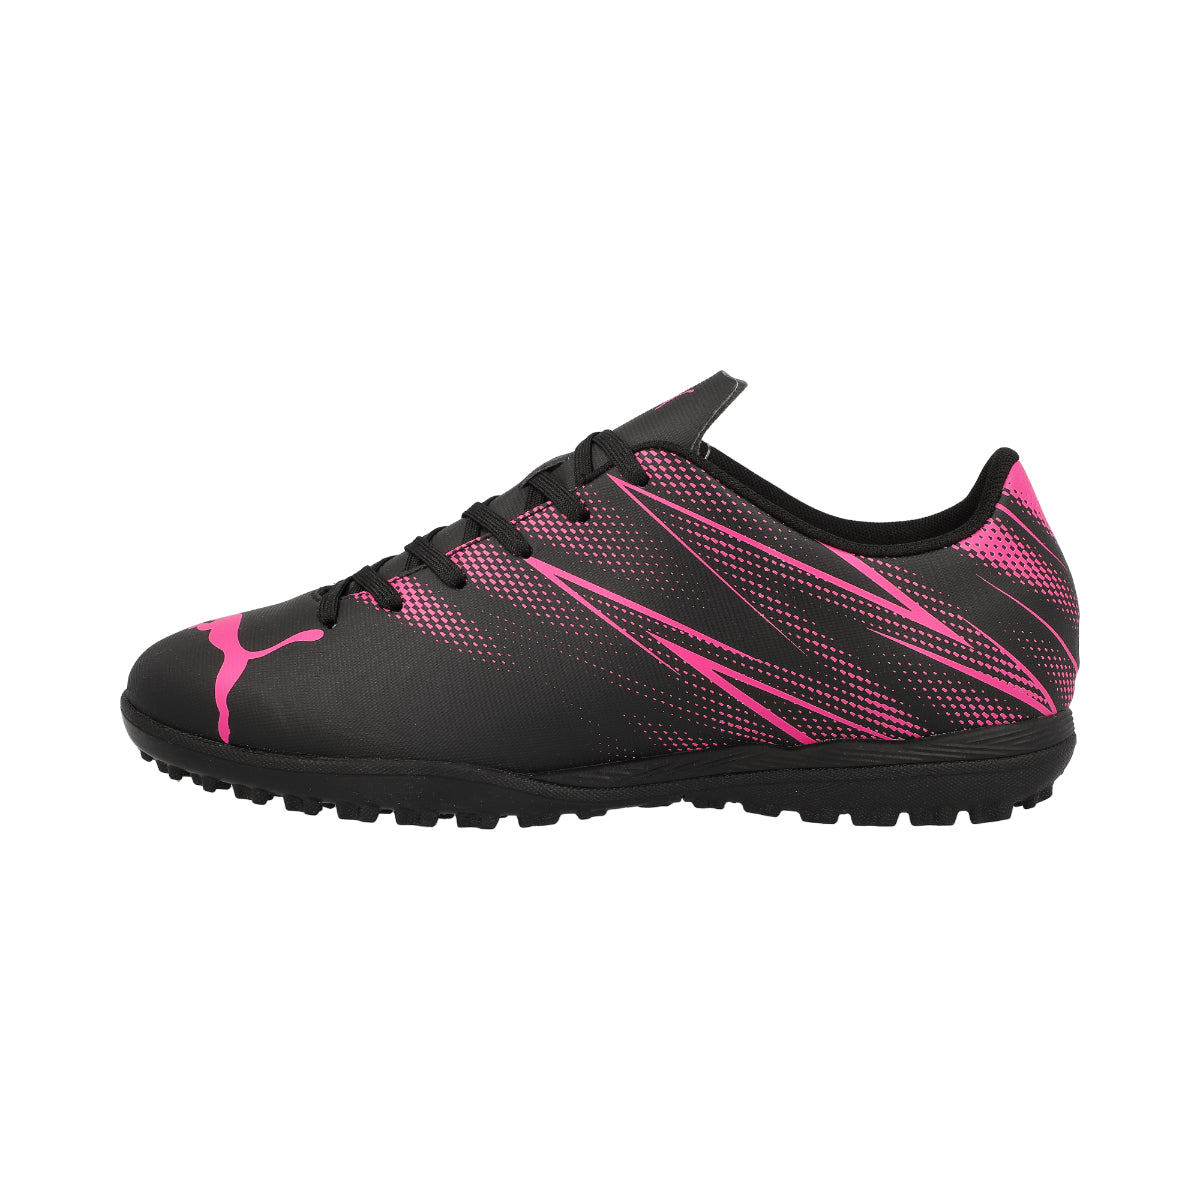 Puma Attacanto Junior TT Football Boots - 3 - Black/Pink